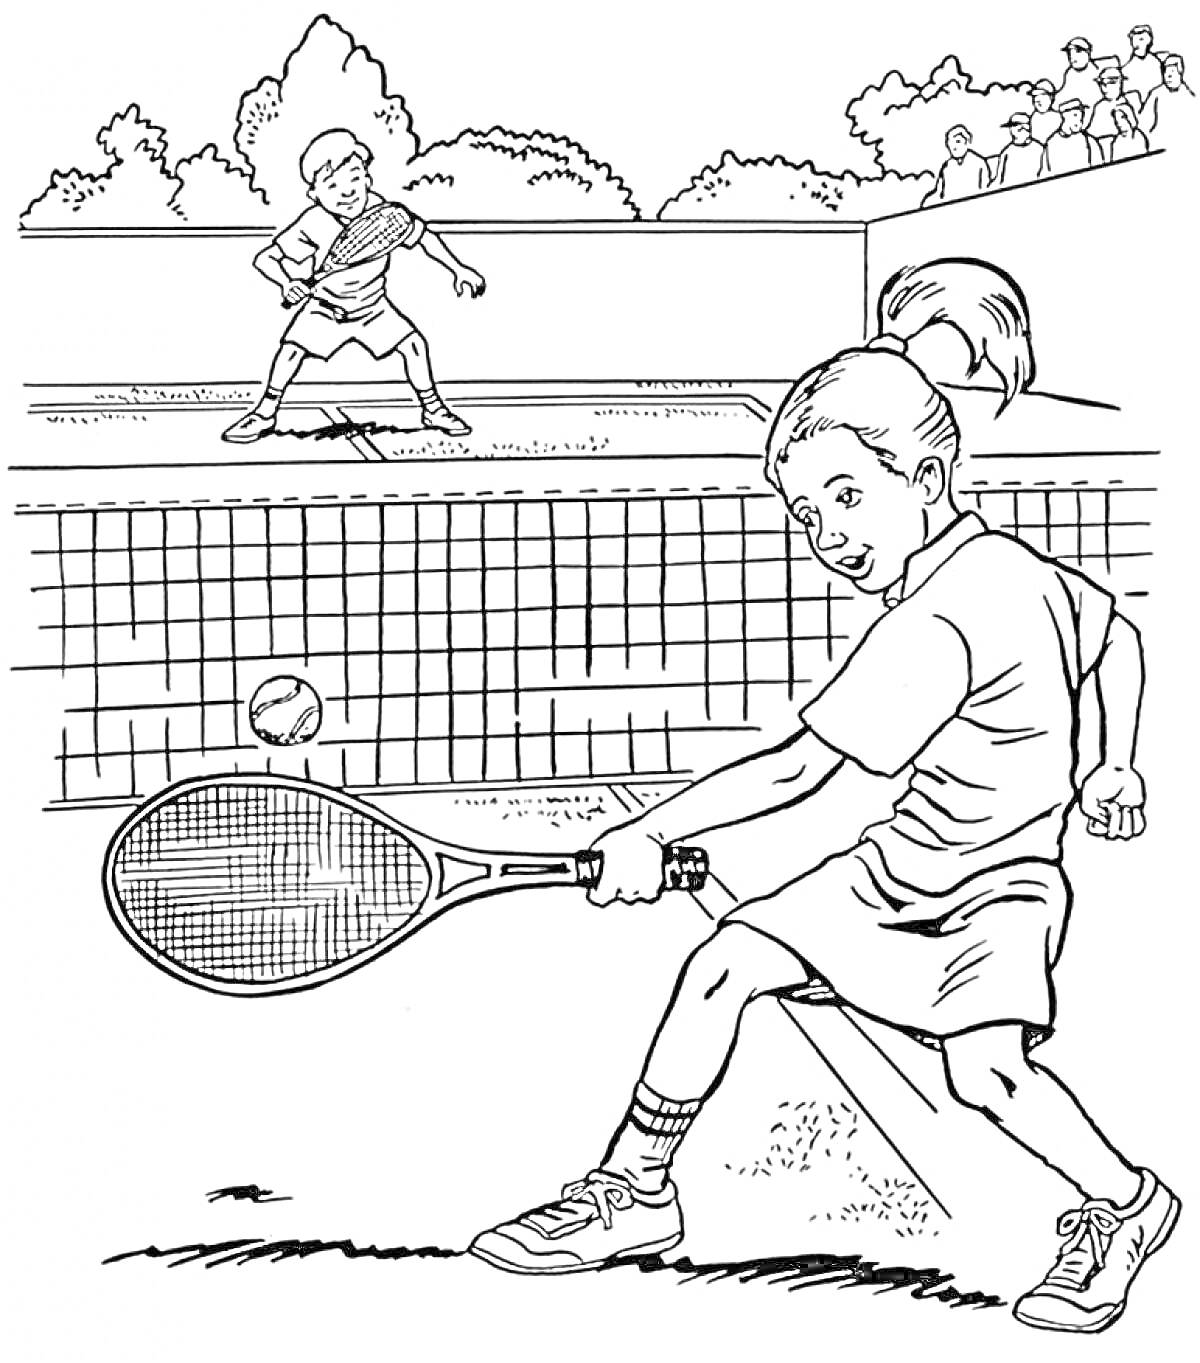 Раскраска Дети играют в теннис на корте с сеткой